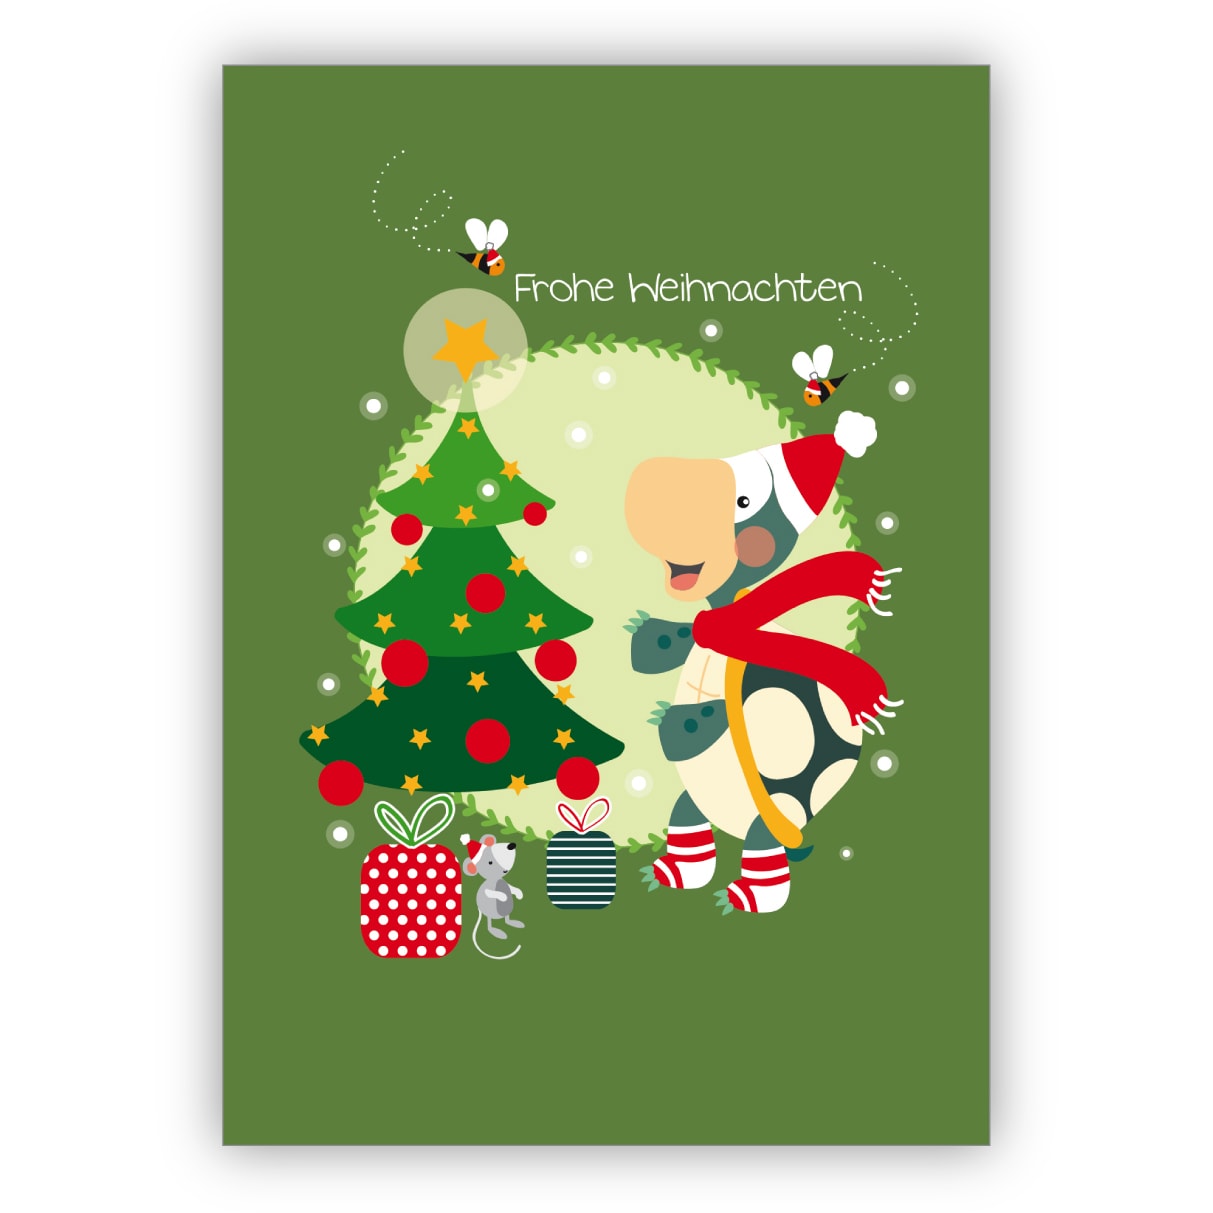 Süße grüne Weihnachtskarte mit Schildkröte vor Weihnachtsbaum: Frohe Weihnachten